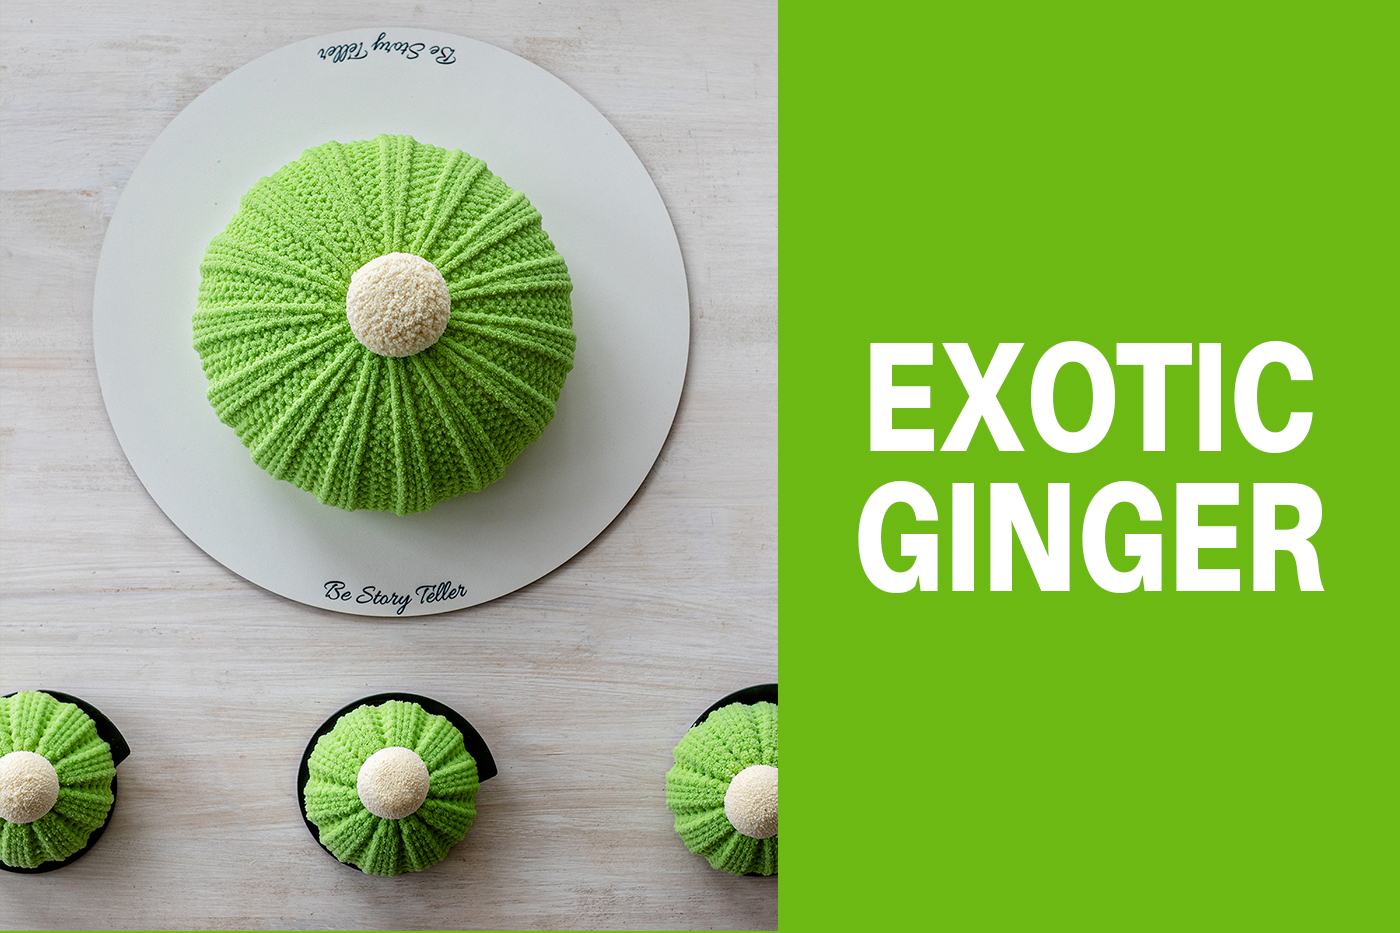 Tort entremet căciulă și monoporții căciuli – Exotic Ginger Cake